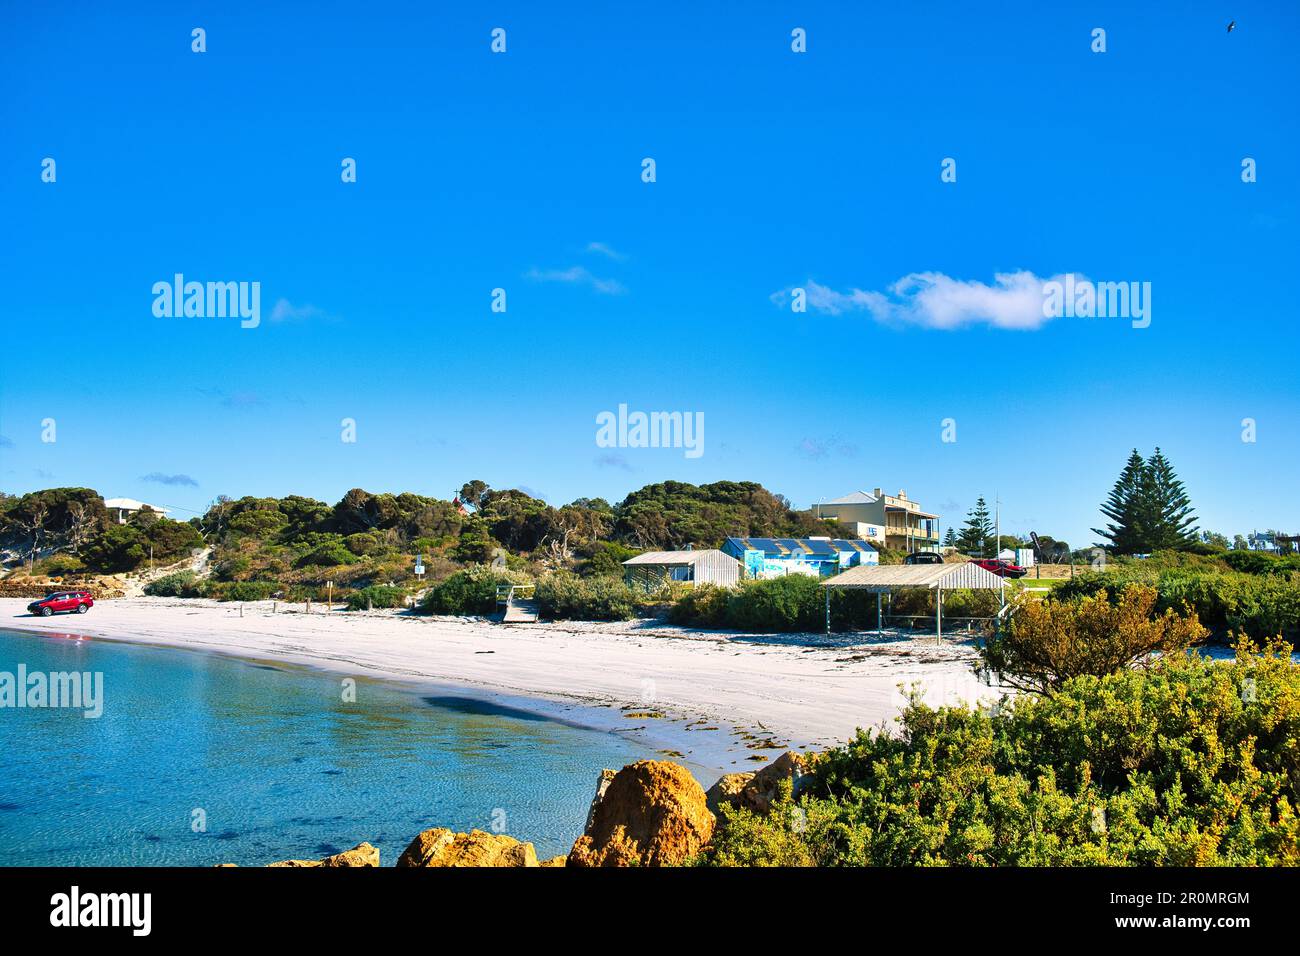 La plage à Hopetoun, petite ville éloignée sur la côte sud de l'Australie occidentale, eau claire, dunes, végétation côtière et voiture sur la plage Banque D'Images